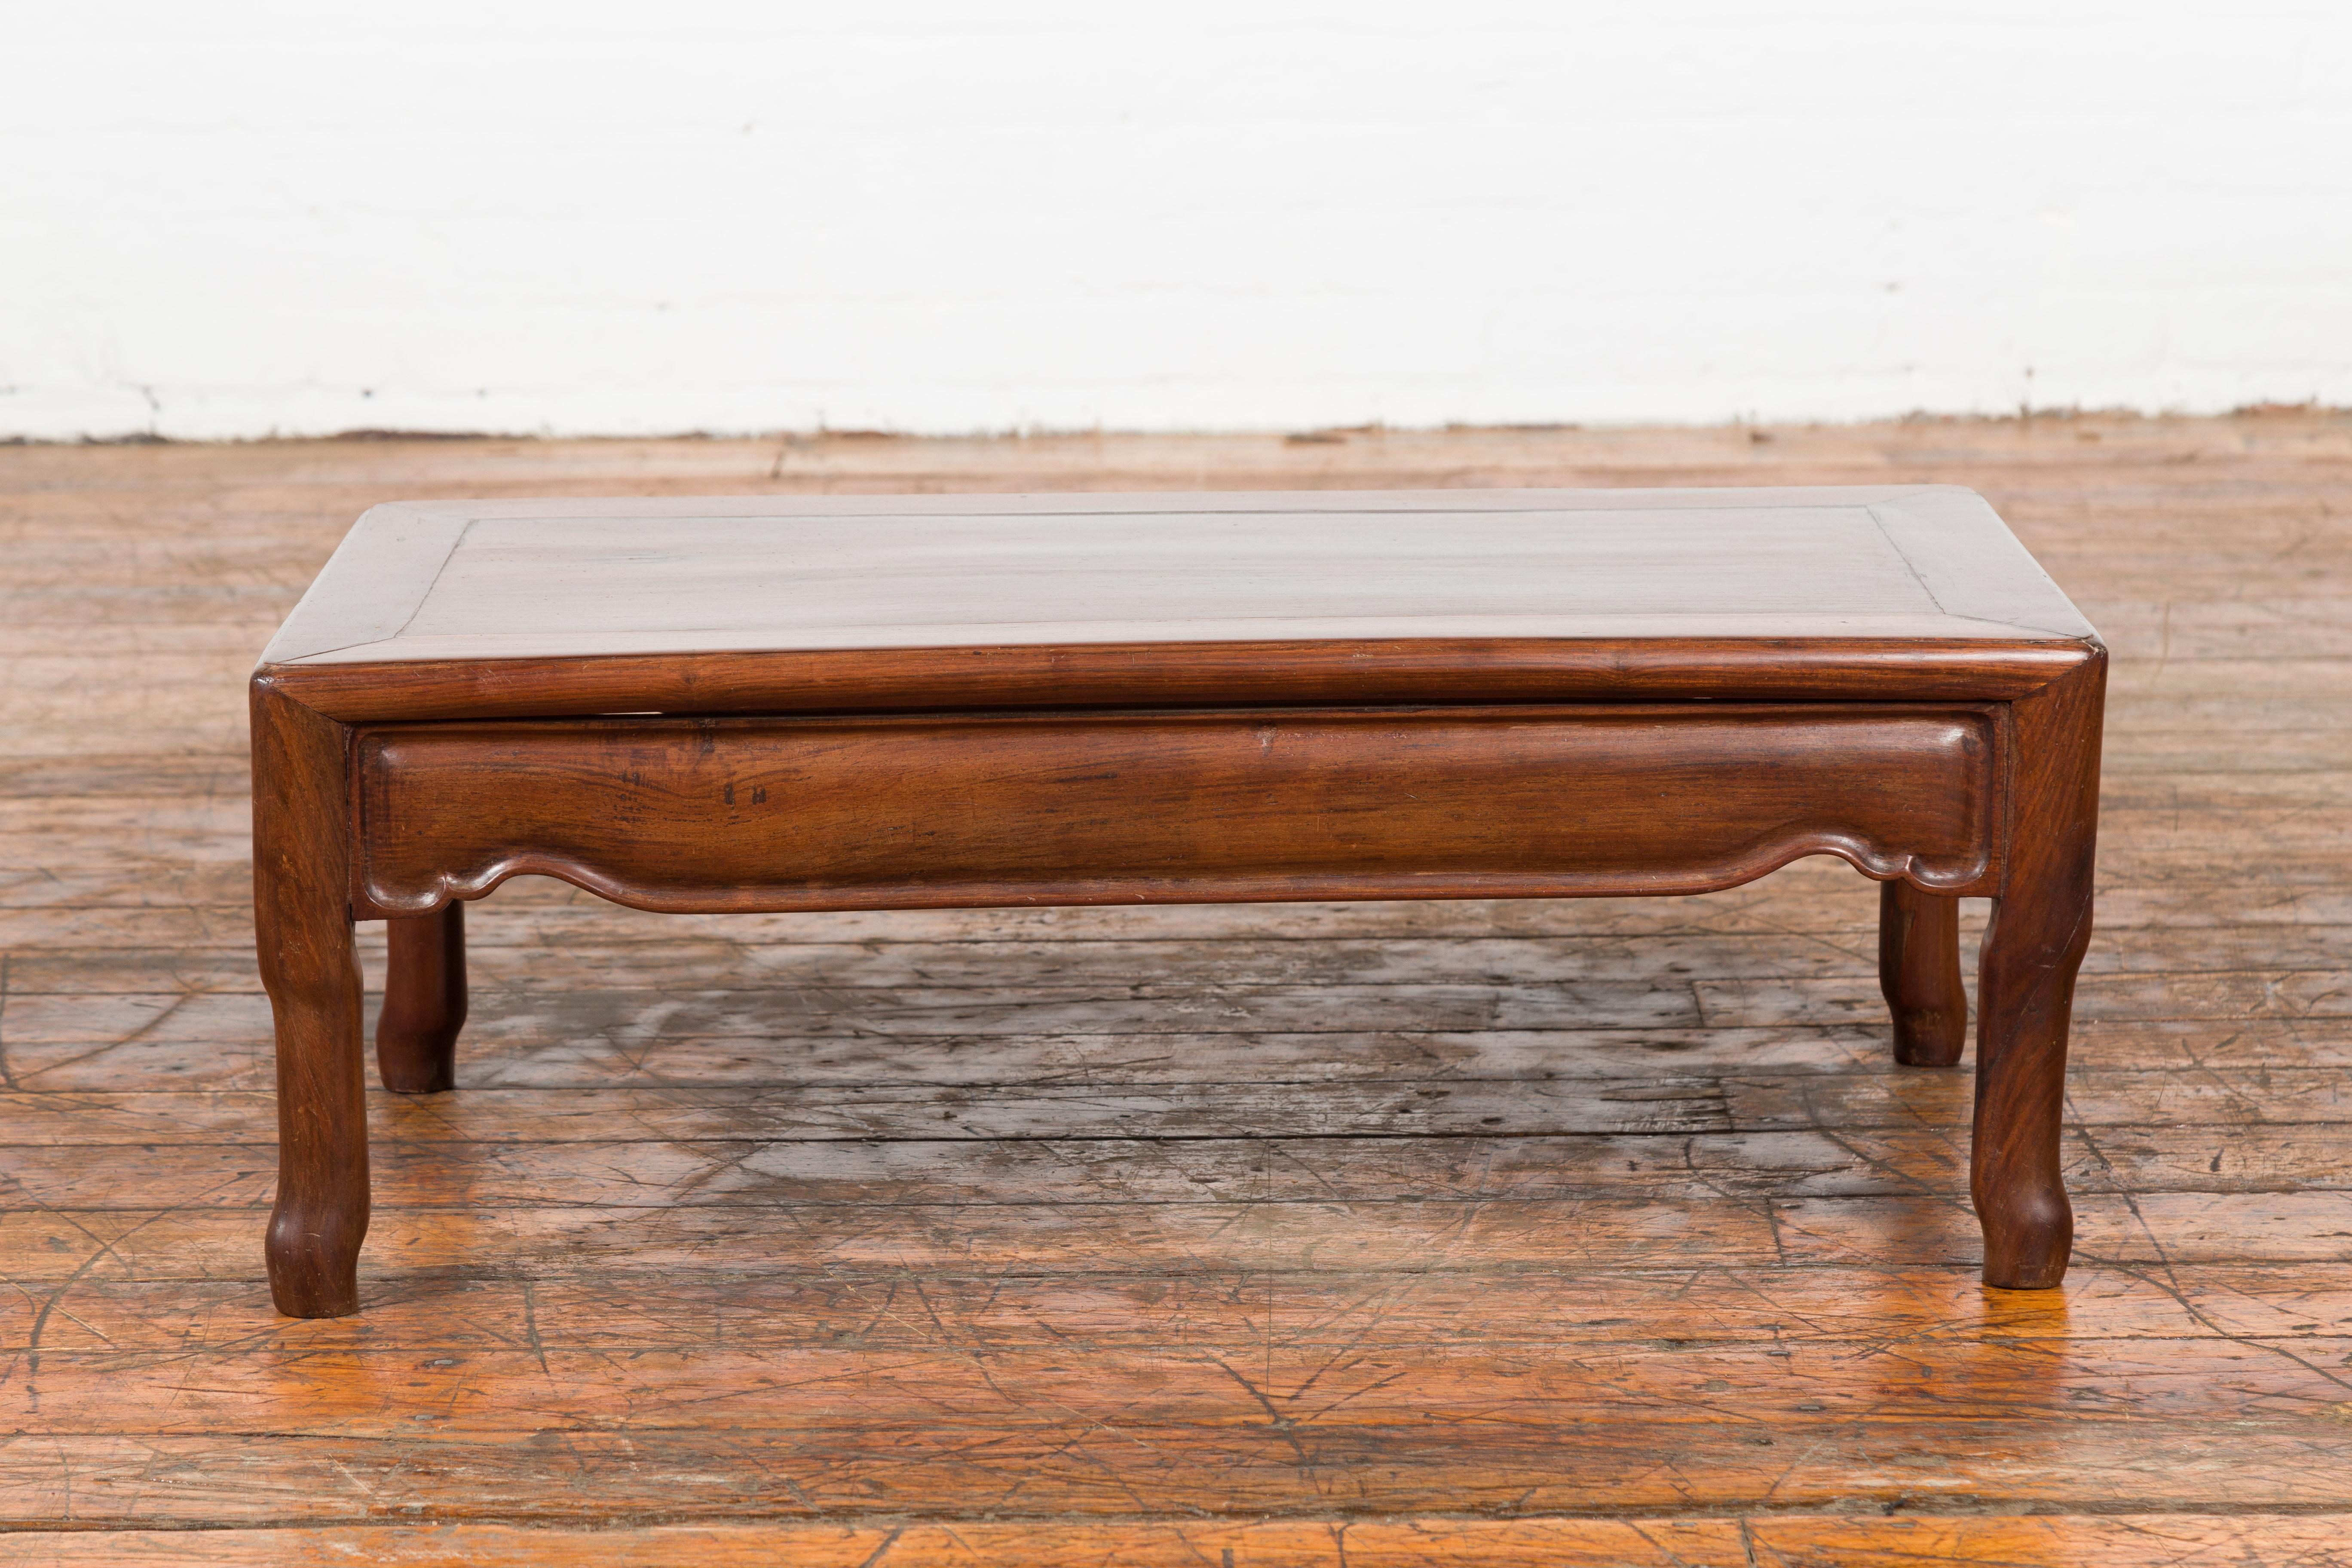 Niedriger Gebetstisch im chinesischen Art-Déco-Stil aus dem 20. Jahrhundert, mit geschnitzter Schürze. Dieser in China hergestellte Gebetstisch im Art-Déco-Stil hat eine rechteckige Platte mit einer zentralen Tafel, die über einer allseitig